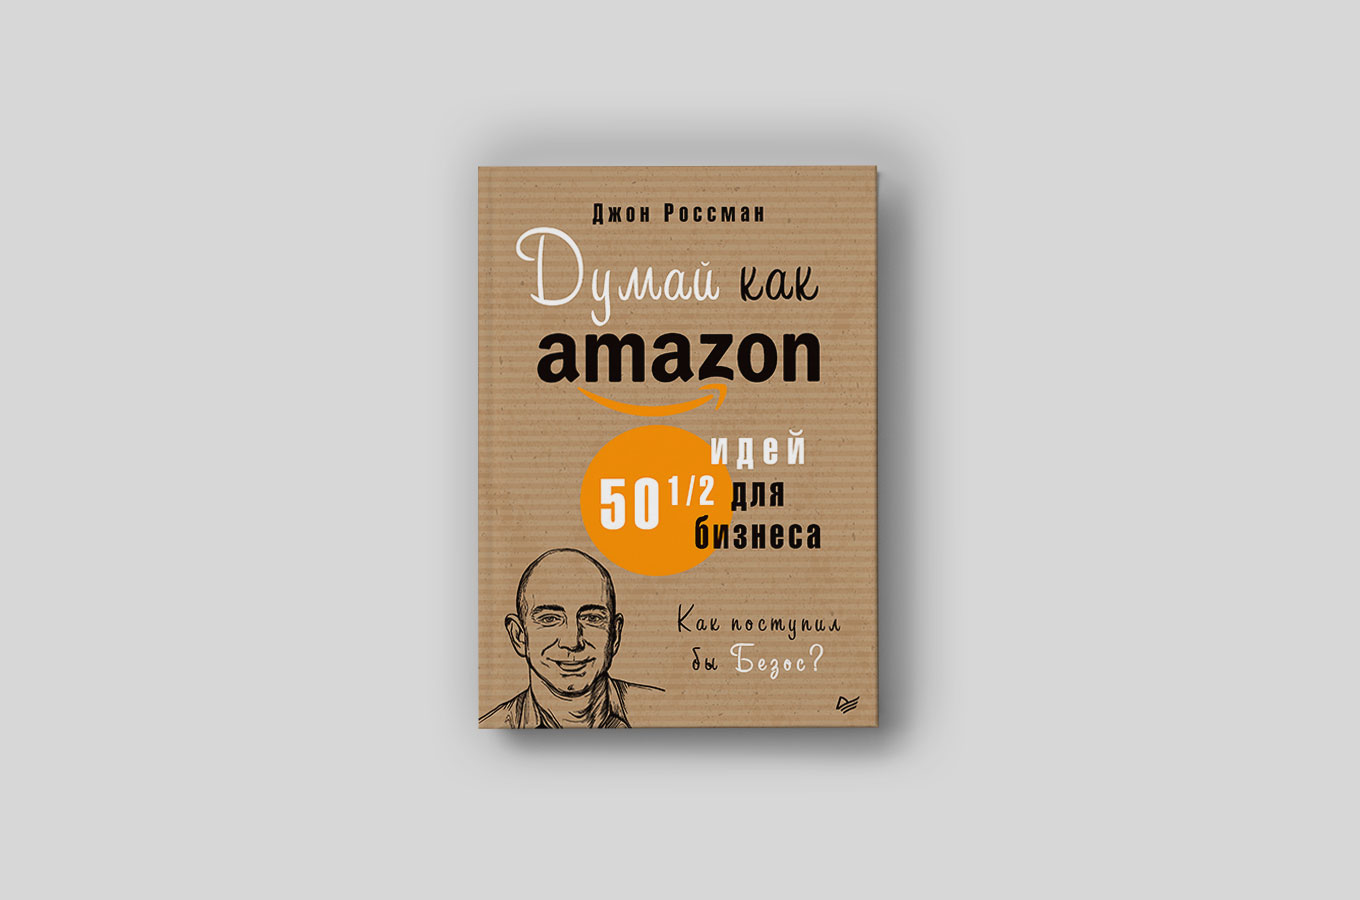 Думай как Amazon: откажитесь от больших зарплат и создавайте бизнес-планы, разрушающие ваш бизнес